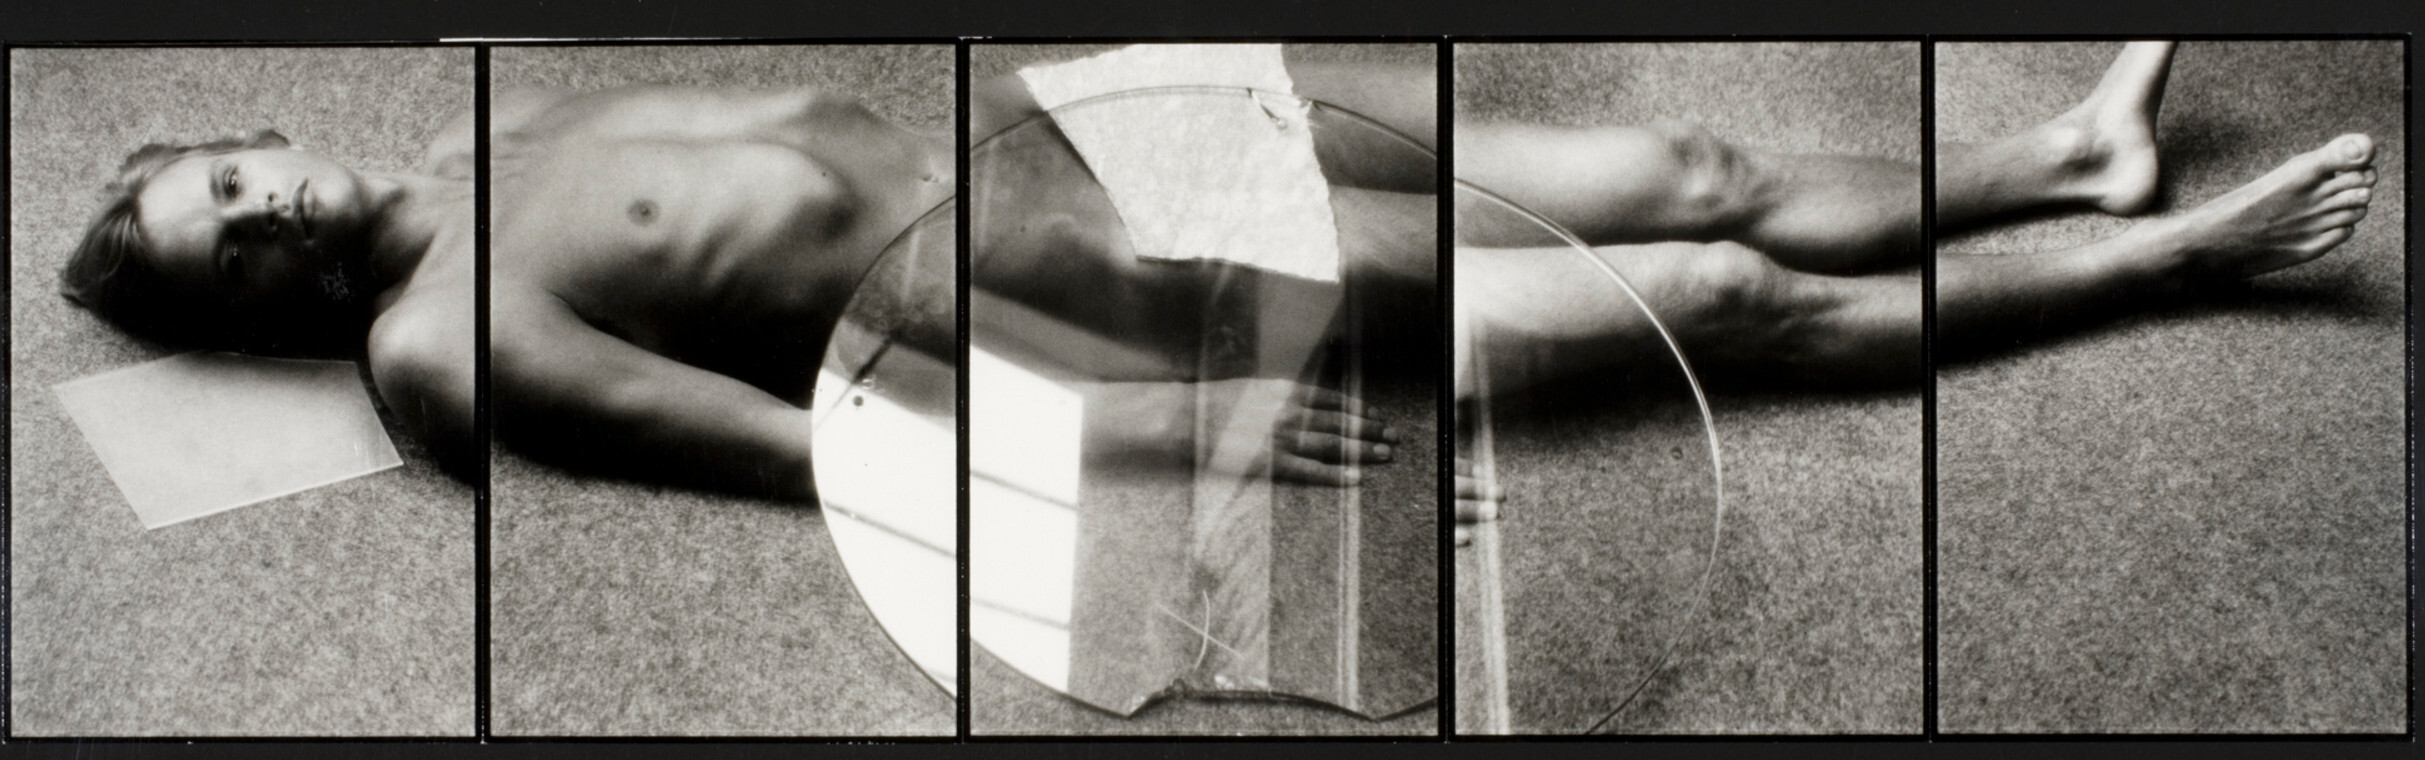 Мужчина на полу, 1980 г. Фотограф Дэвид Сайднер